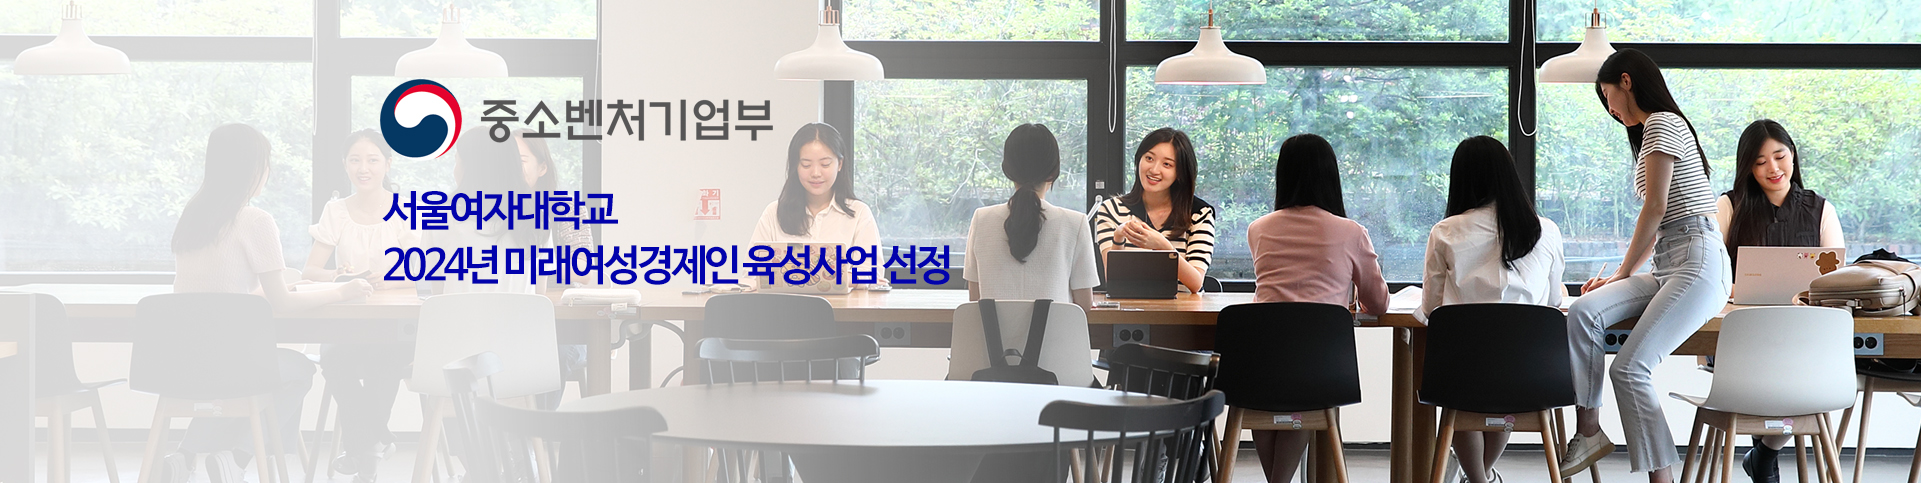 서울여자대학교 2024년 미래여성경제인 육성사업 선정